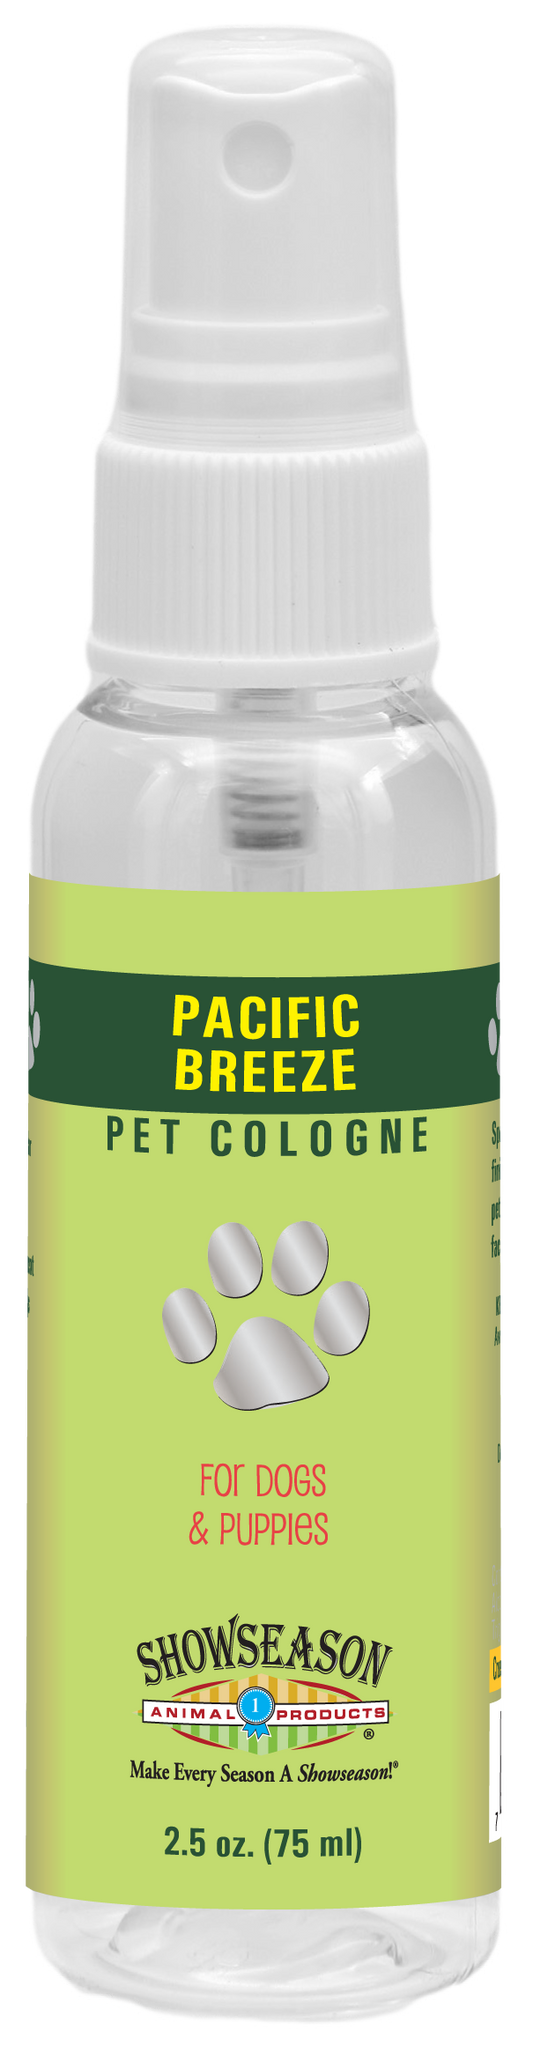 Pacific Breeze Pet Cologne | Showseason®